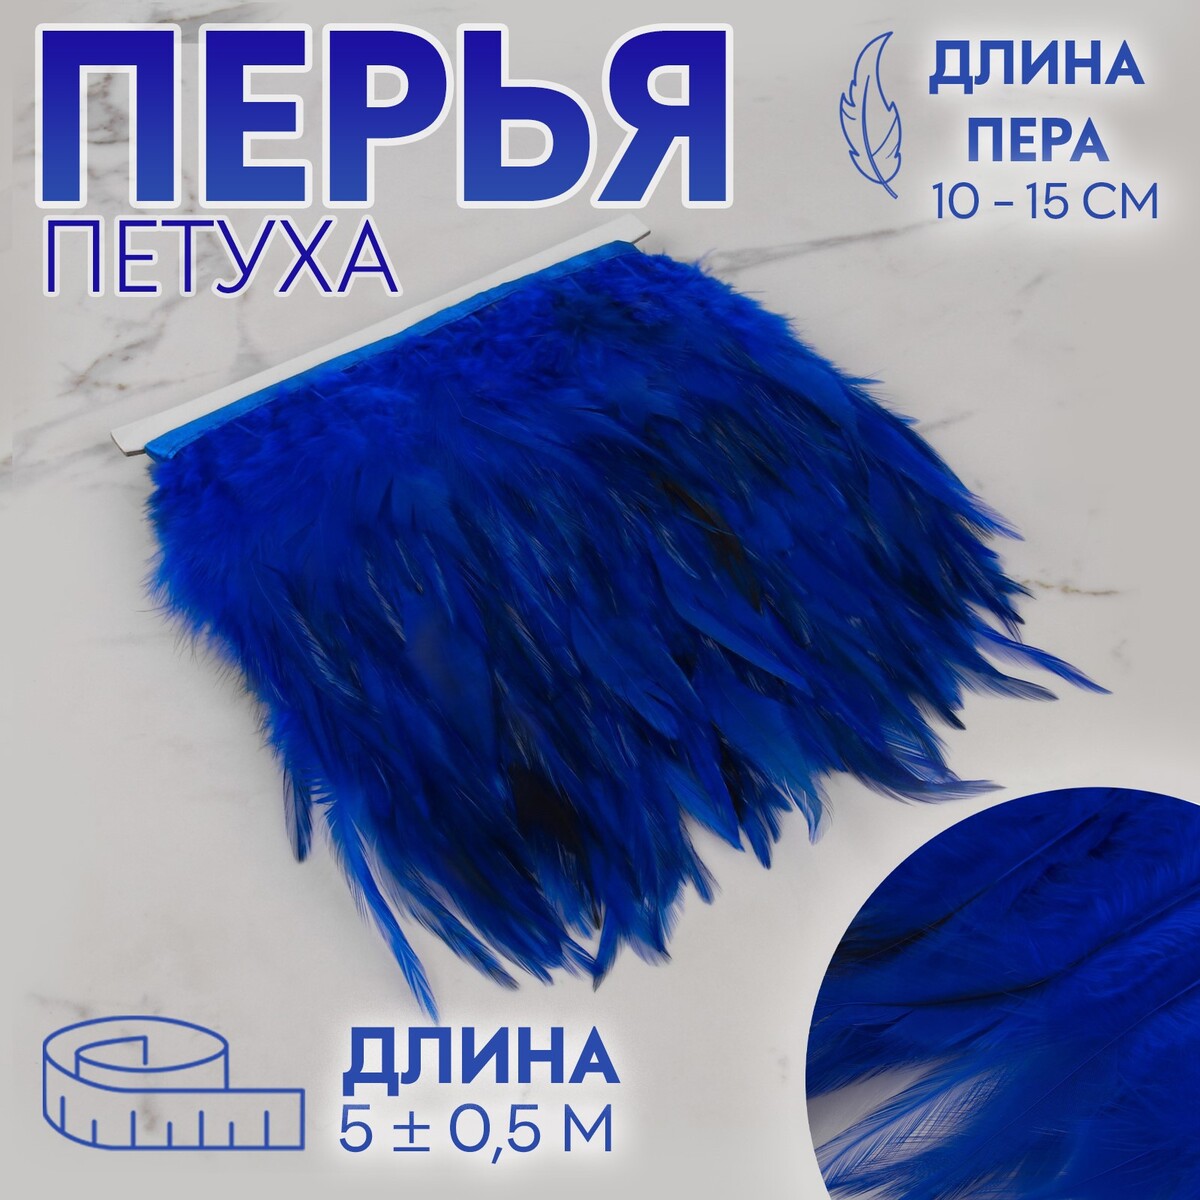 Тесьма с перьями петуха, 10-15 см, 5 ± 0,5 м, цвет синий тесьма с перьями петуха 10 15 см 5 ± 0 5 м синий